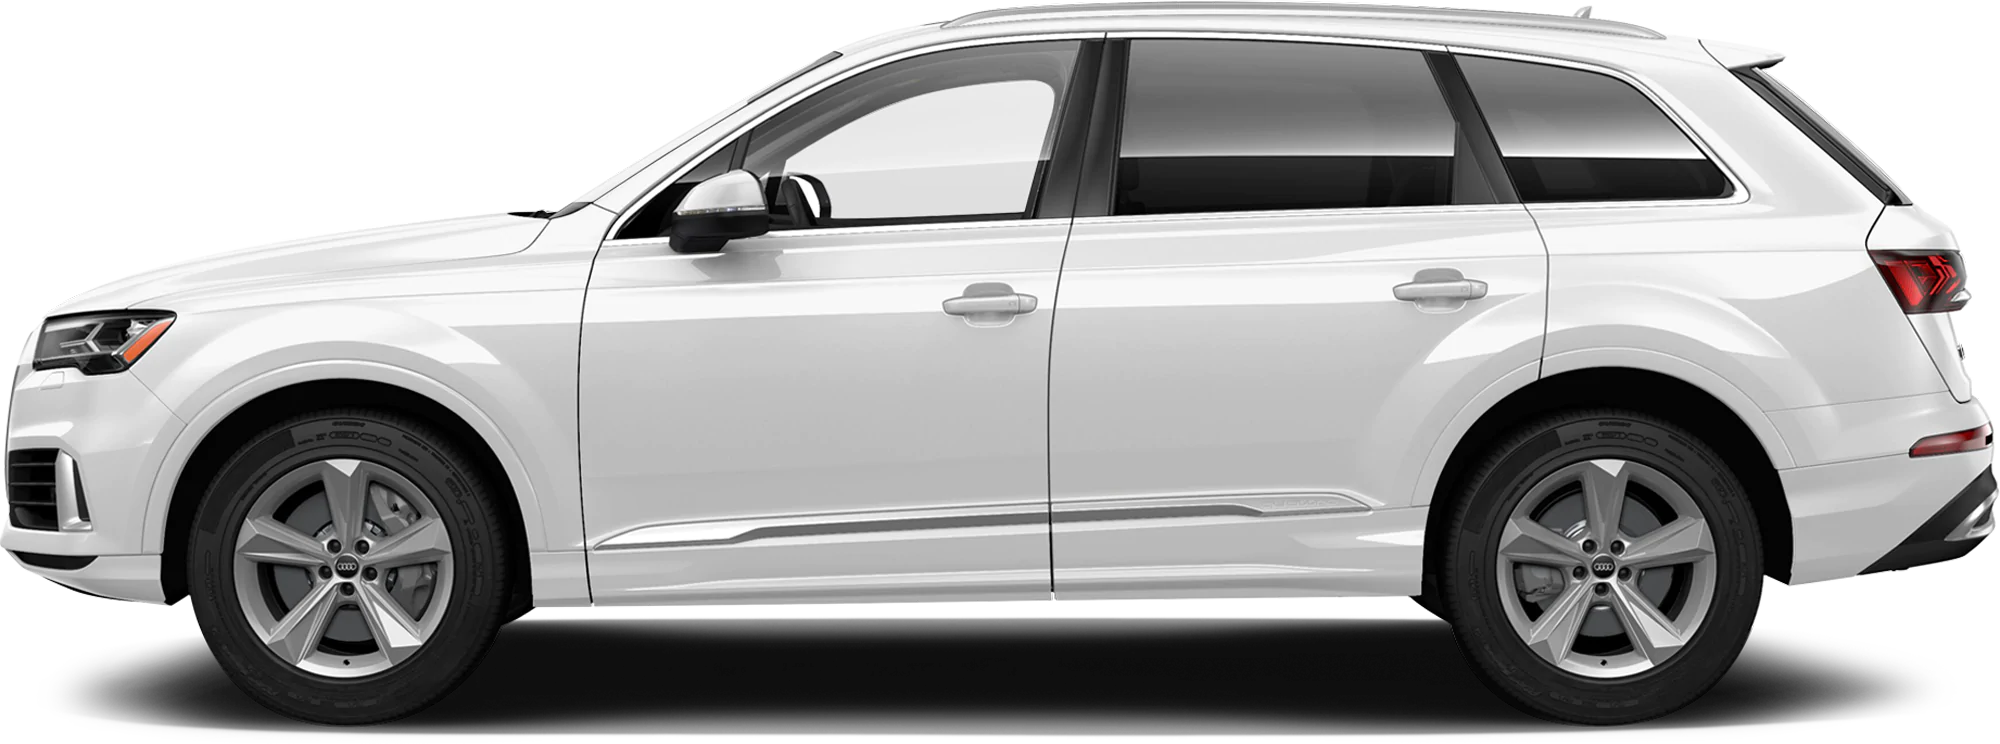 Vue latérale Audi SUV PNG Image